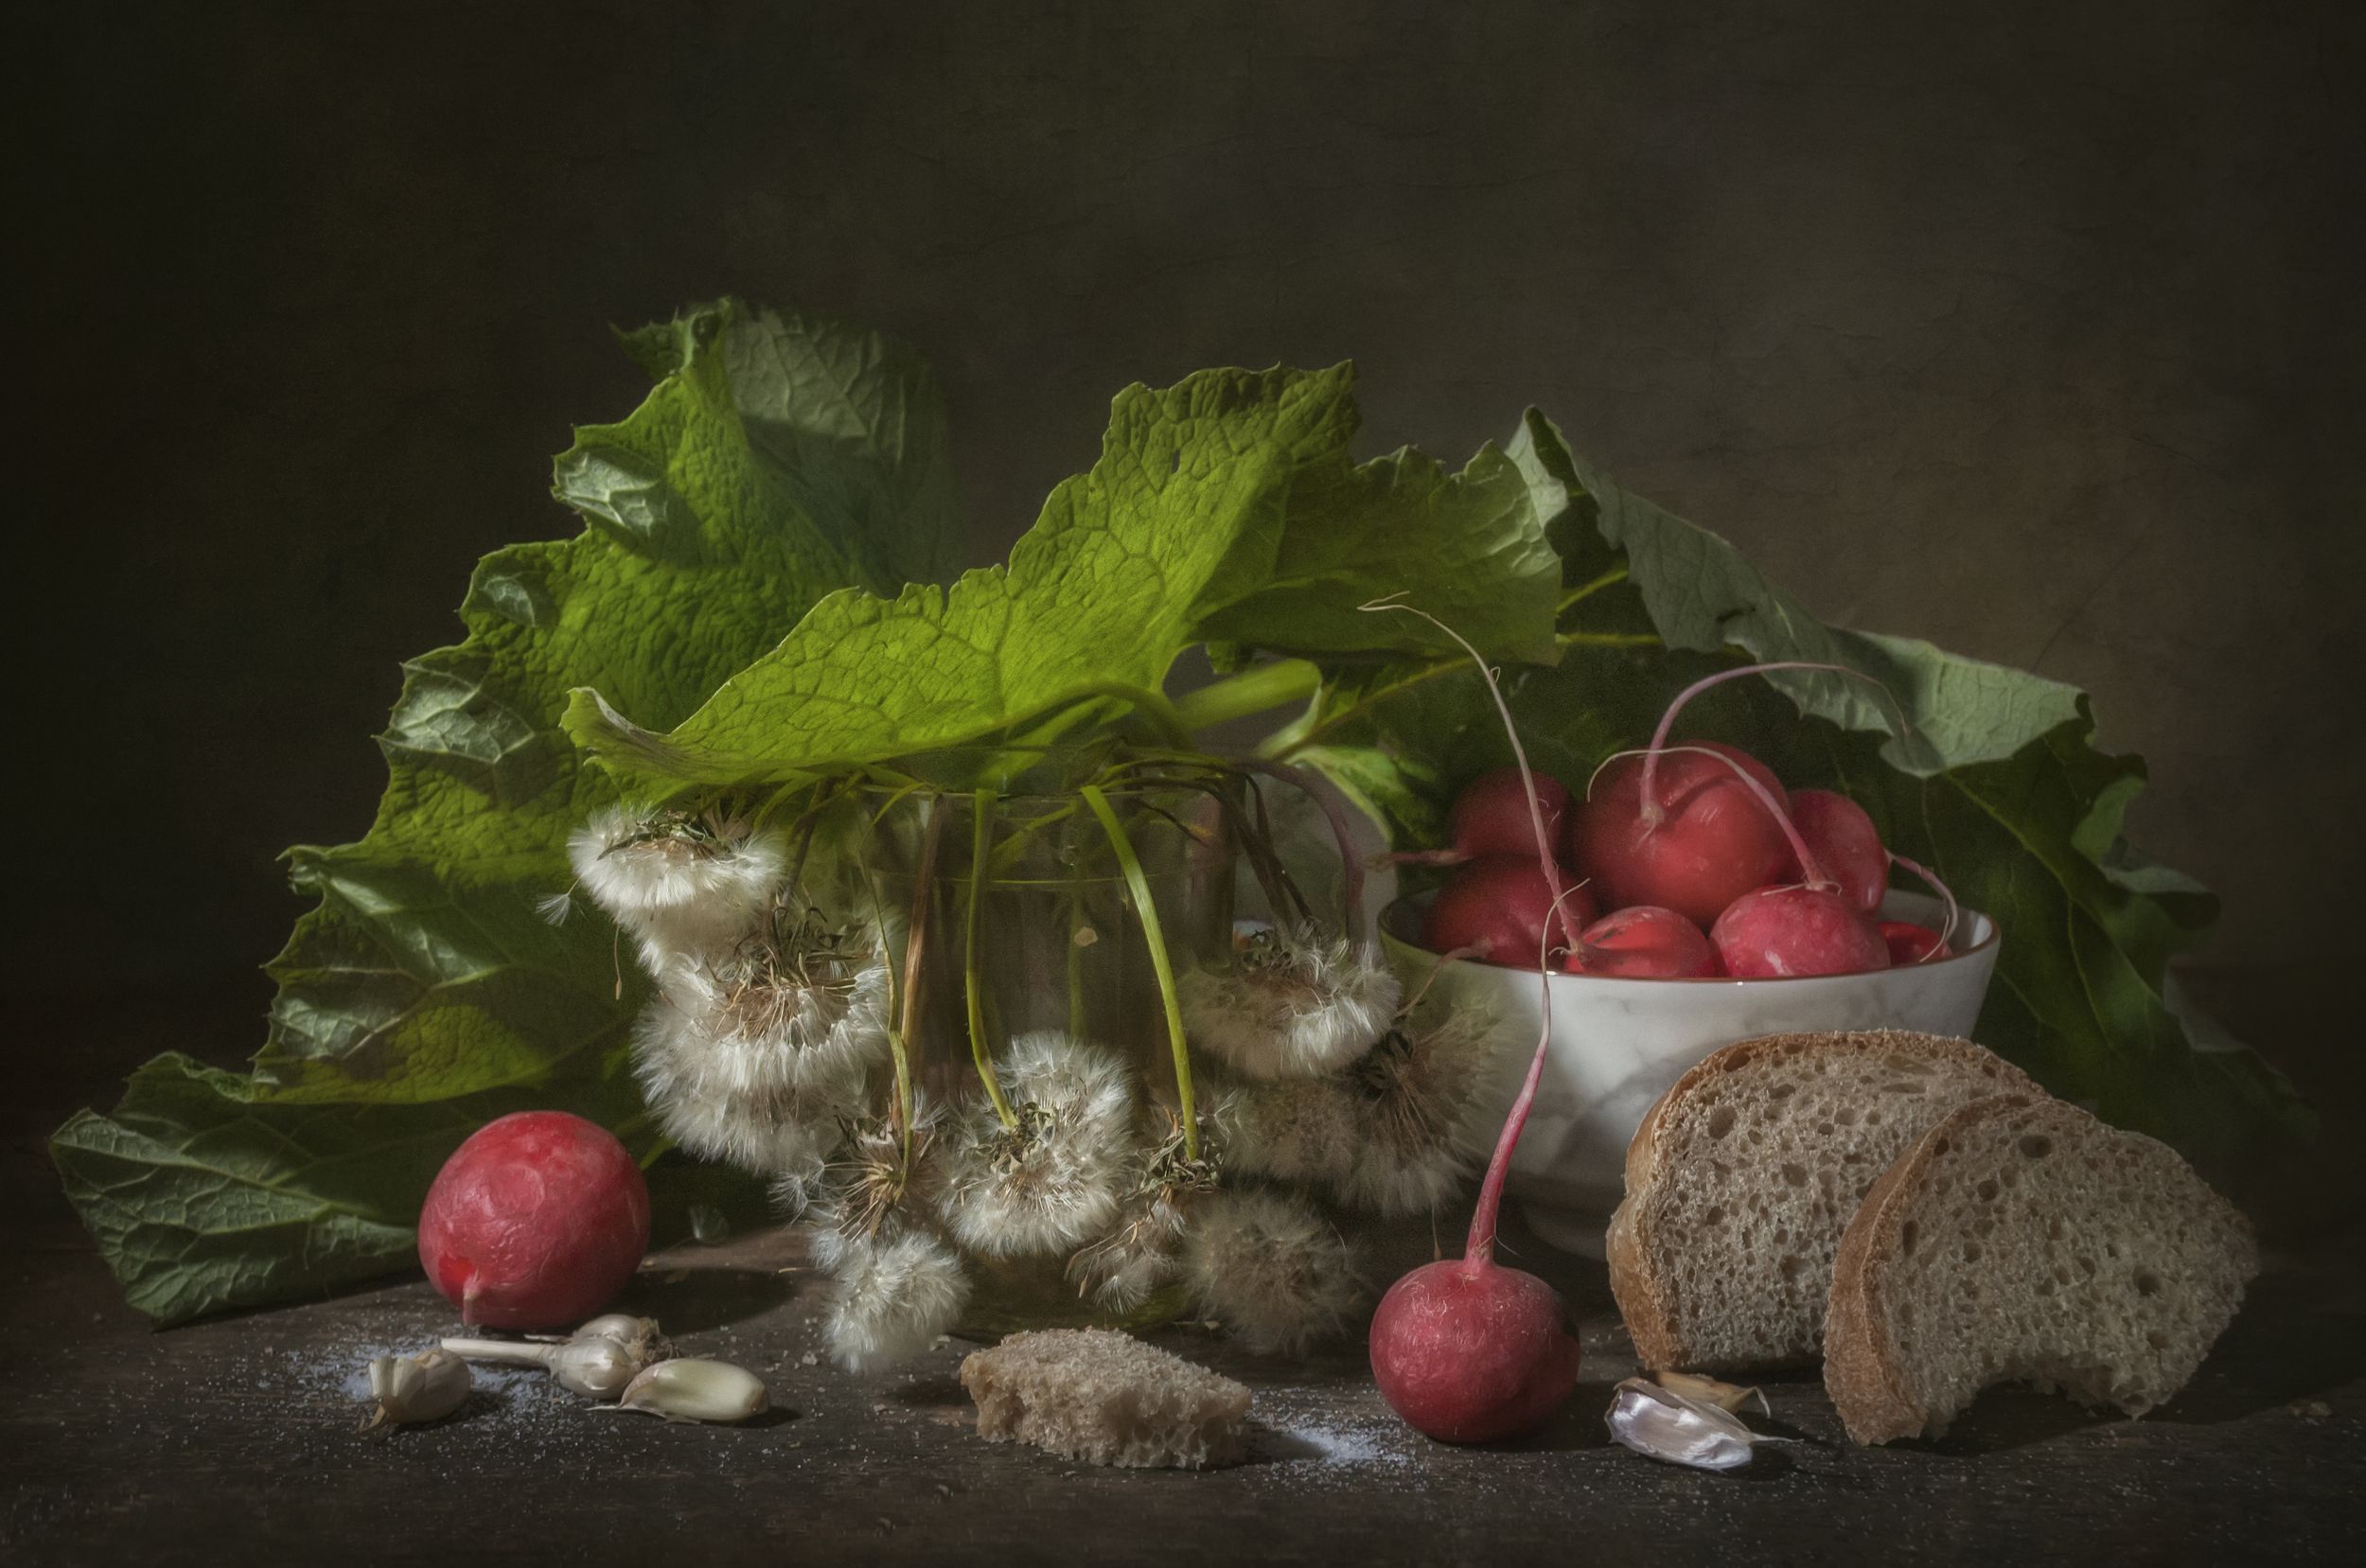 редис,овощи,лист лопуха,хлеб,весна,одуванчики,увядание,стакан,дача, Владимир Володин